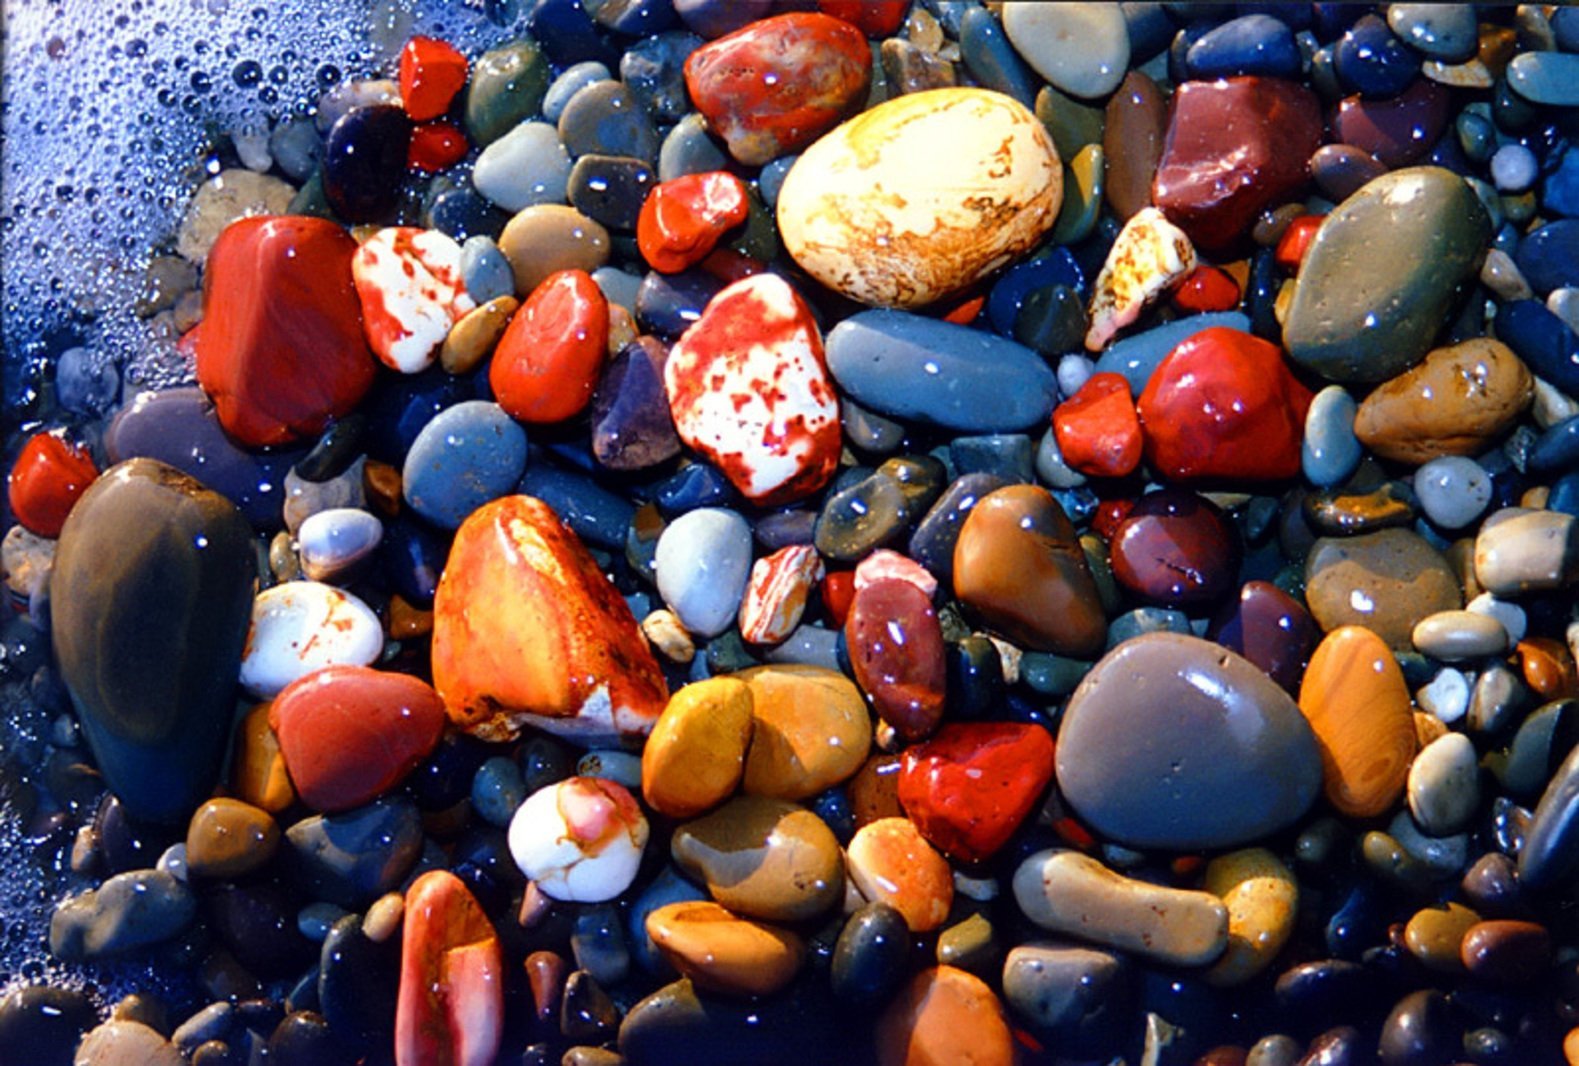 Красивые морские камни